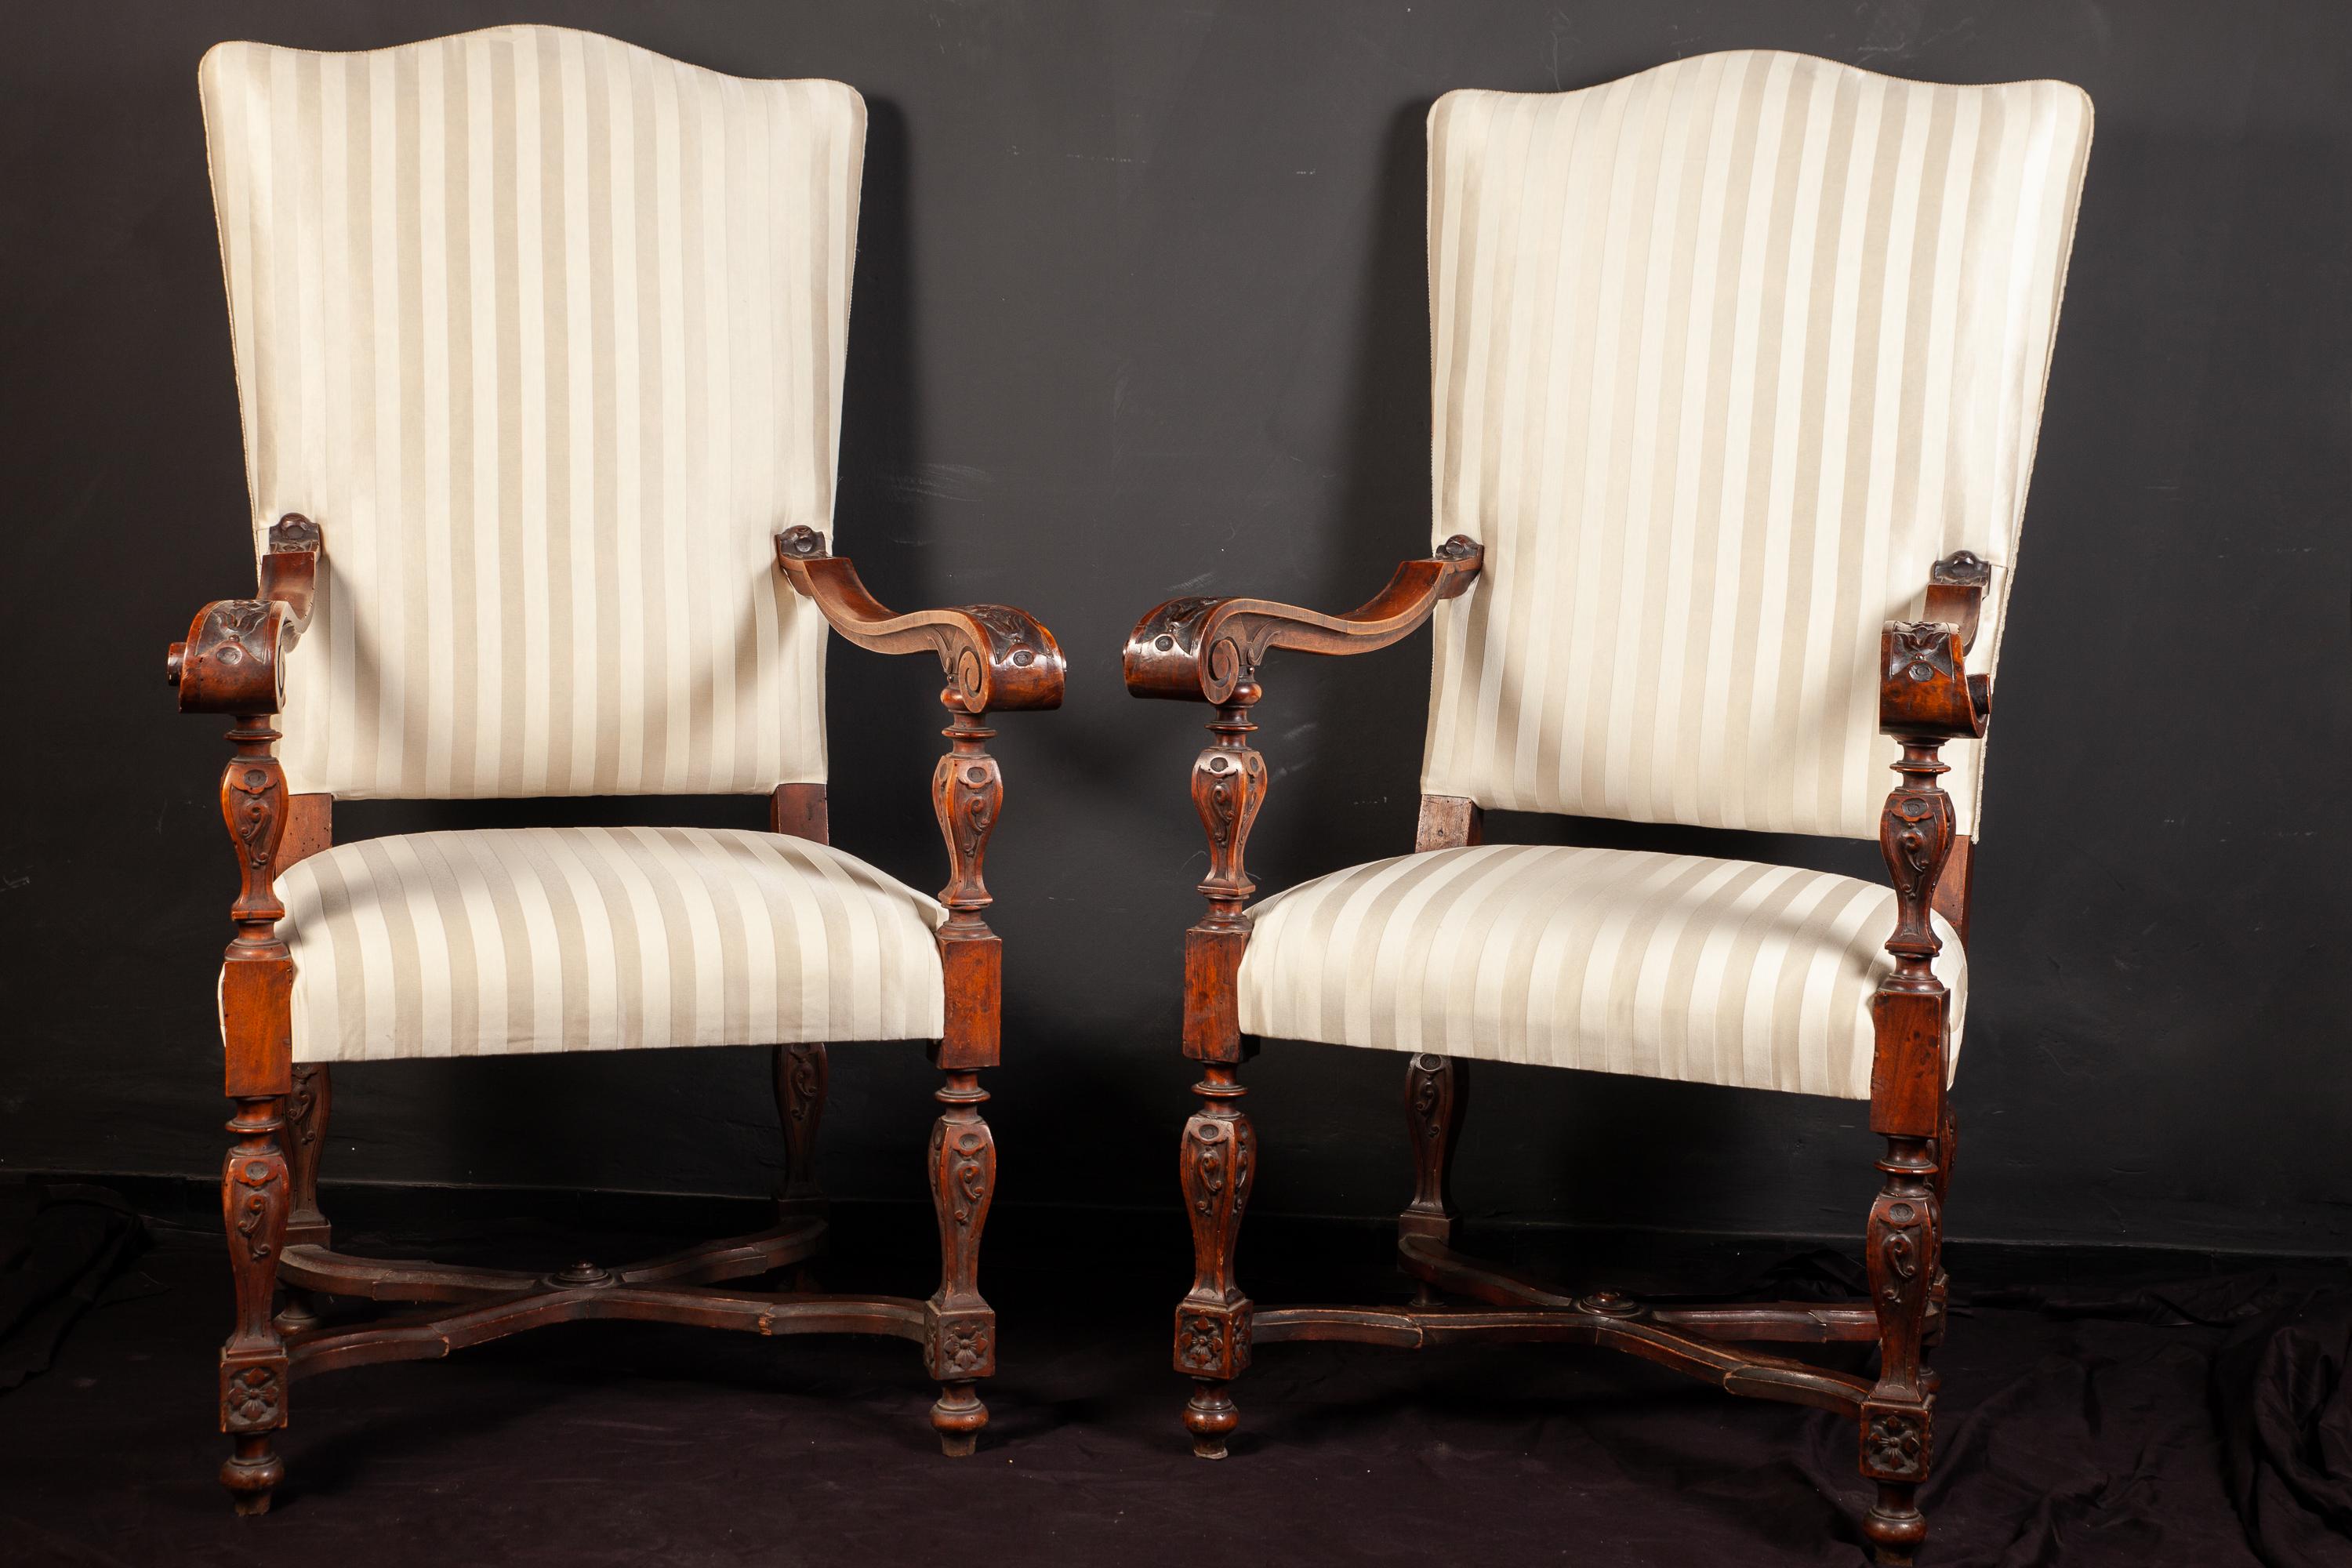 Paire d'élégants fauteuils italiens du 19ème siècle en noyer finement sculpté avec une tapisserie à rayures blanches.
Mesures : 130 x 60 x 50.